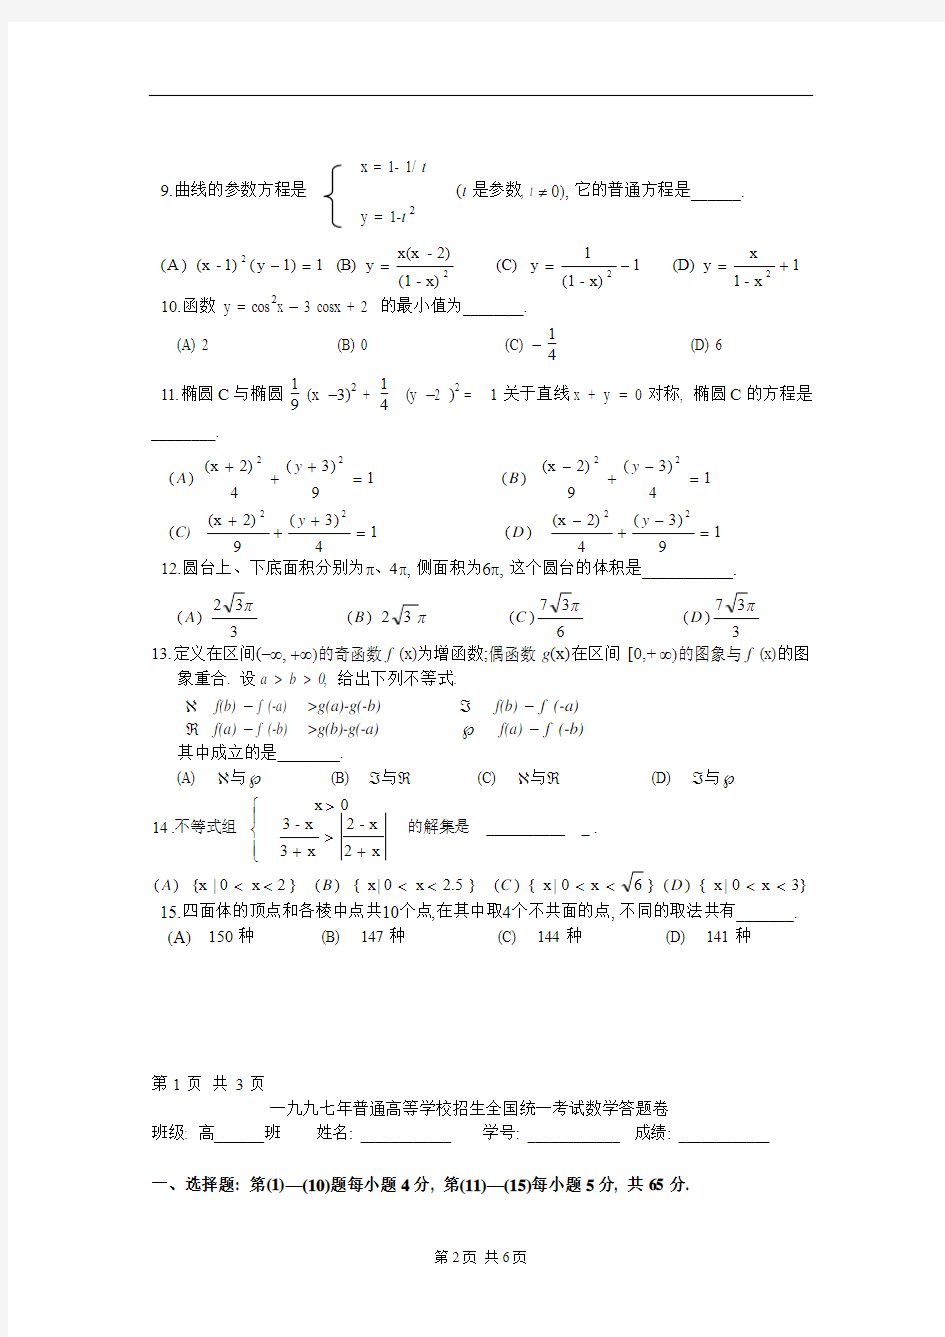 1997年高考(理工农医类)数学